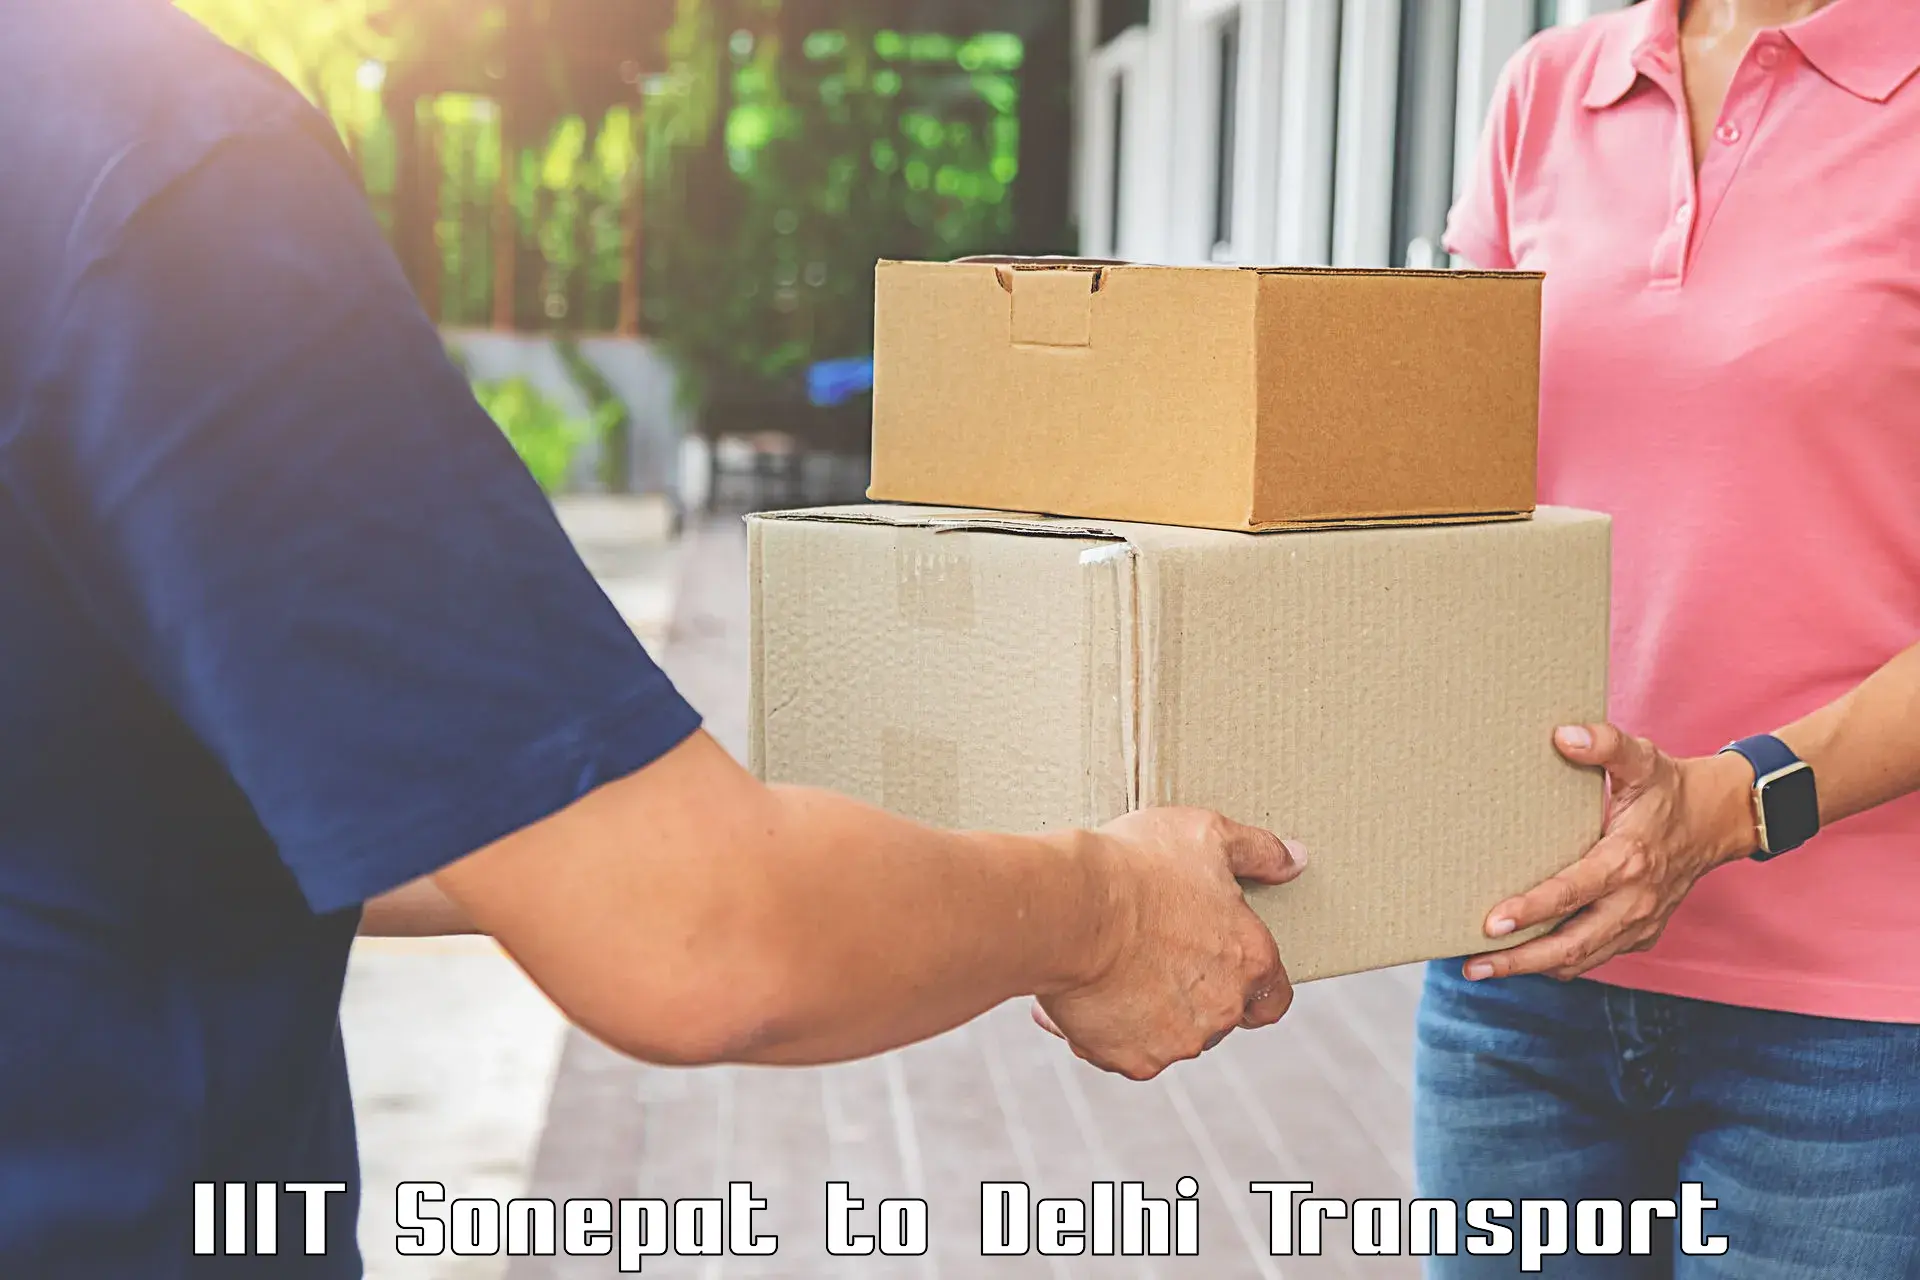 Goods transport services IIIT Sonepat to NIT Delhi